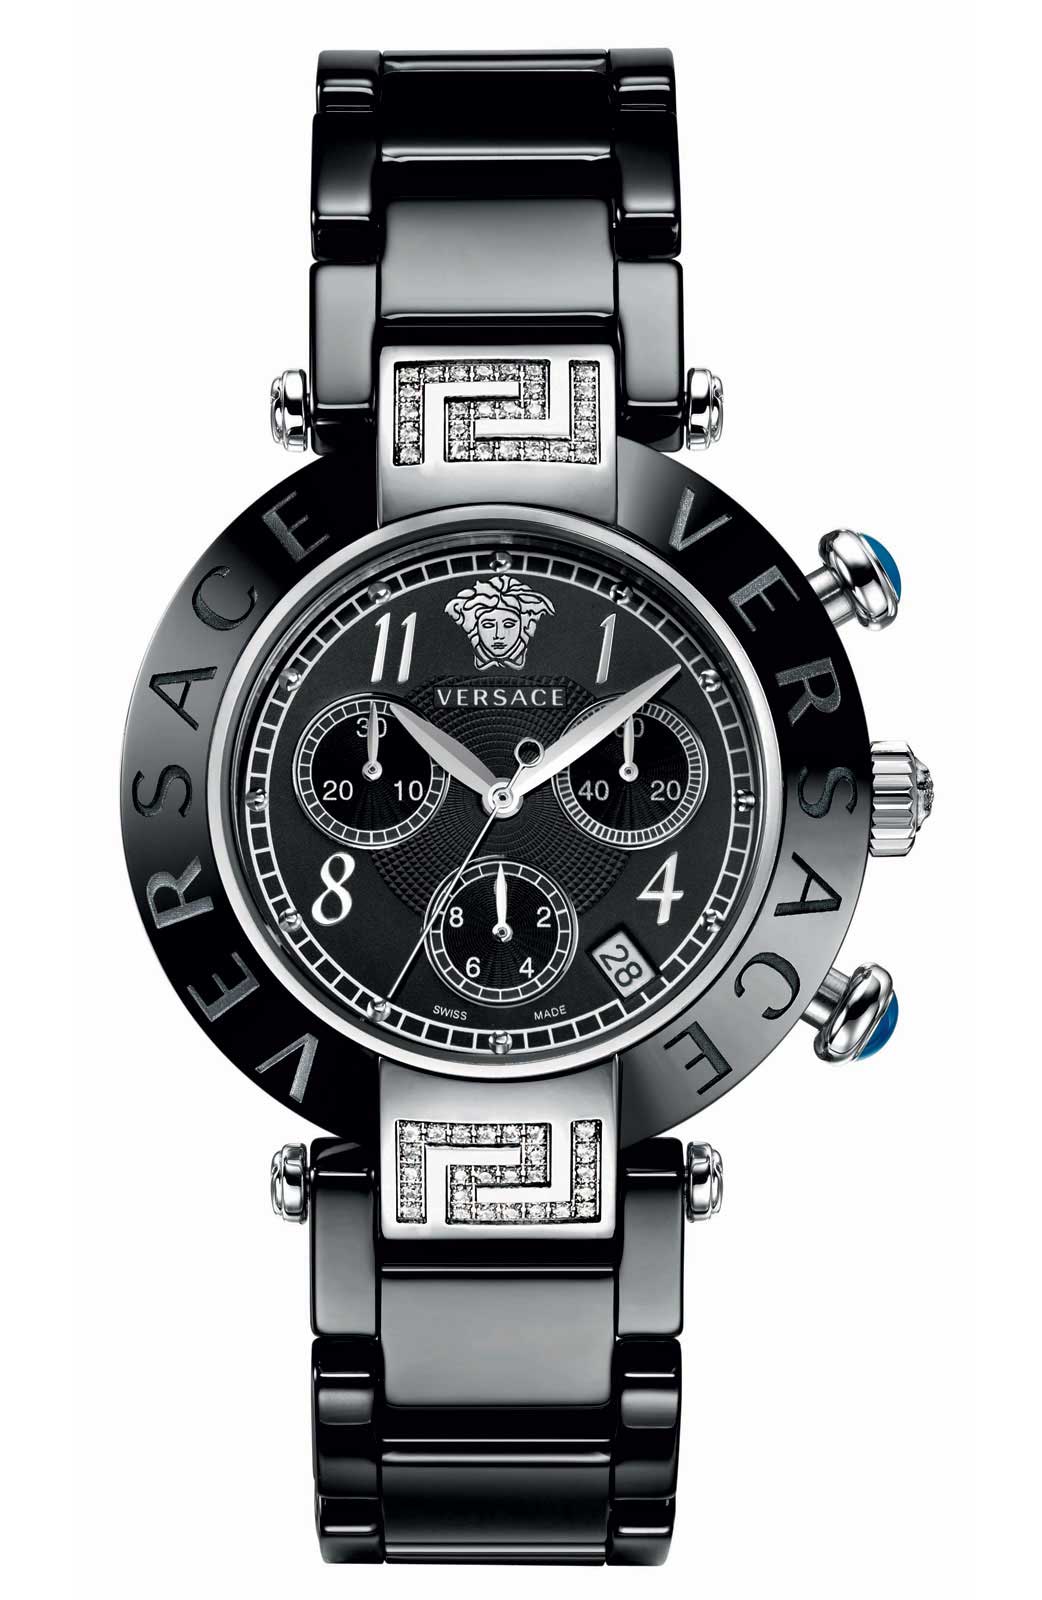 Versace QUARTZ watch 5040D BLACK CERAMIC BRACELET